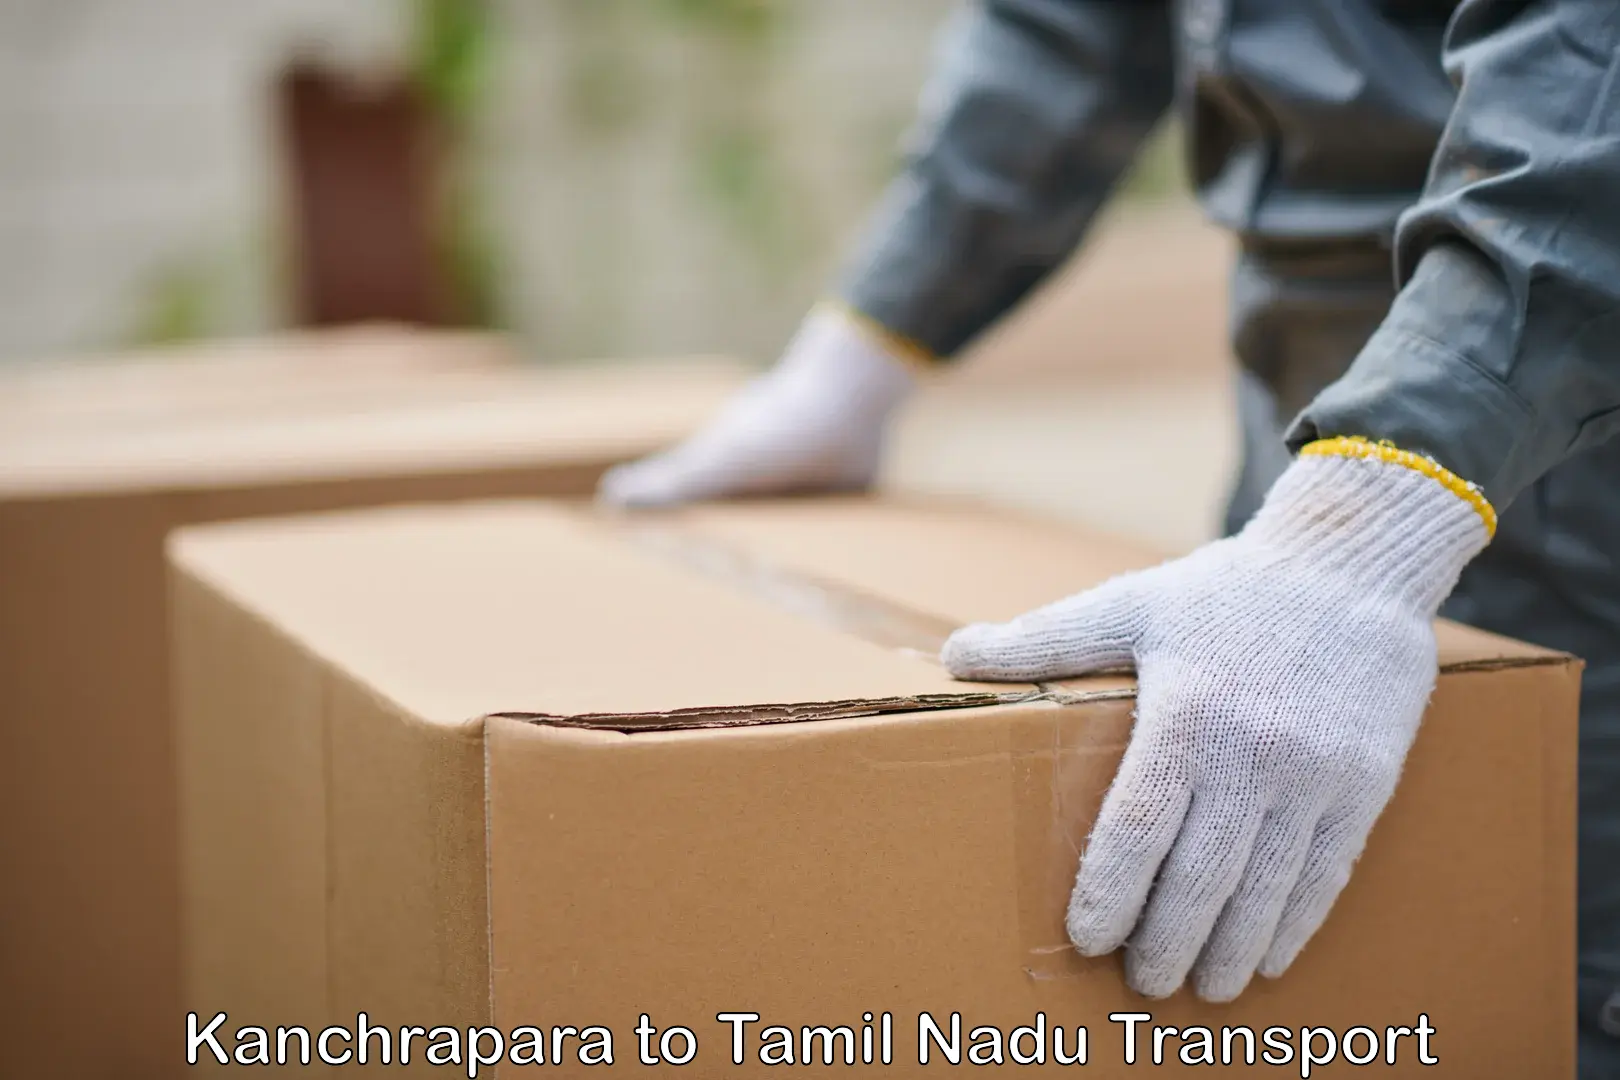 Online transport Kanchrapara to Cuddalore